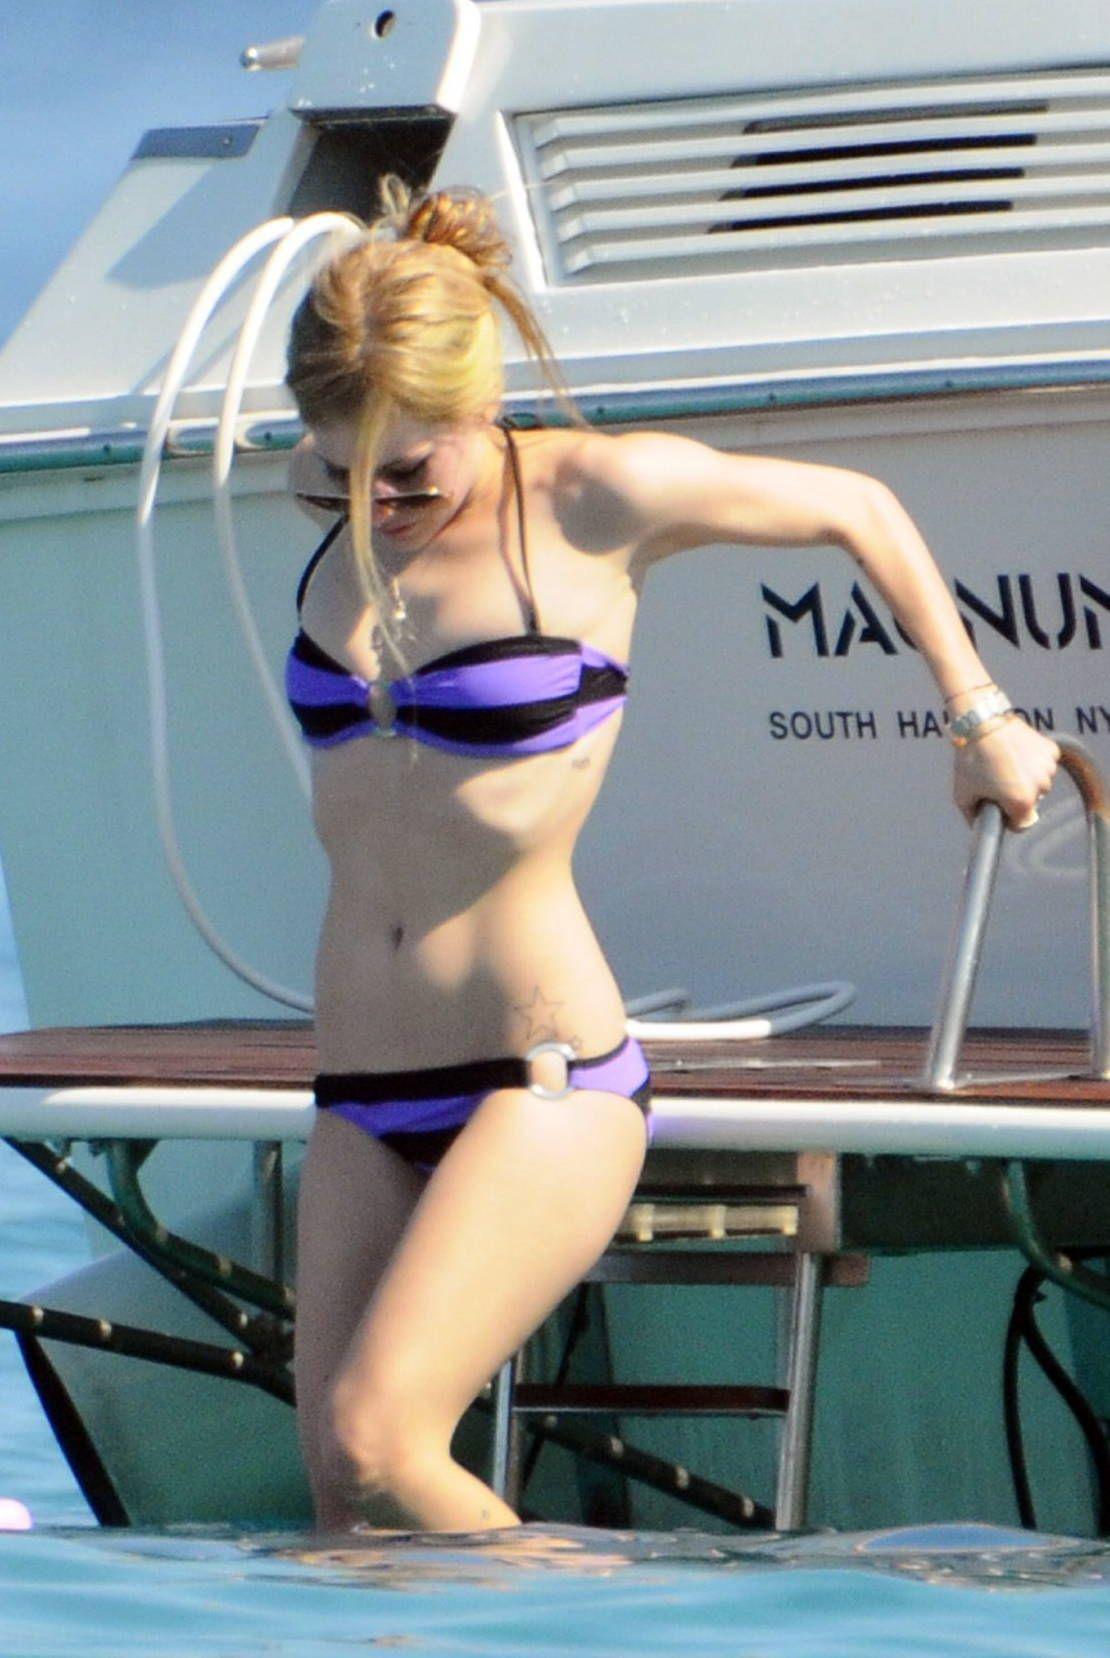 Avril lavigne loses bikini top